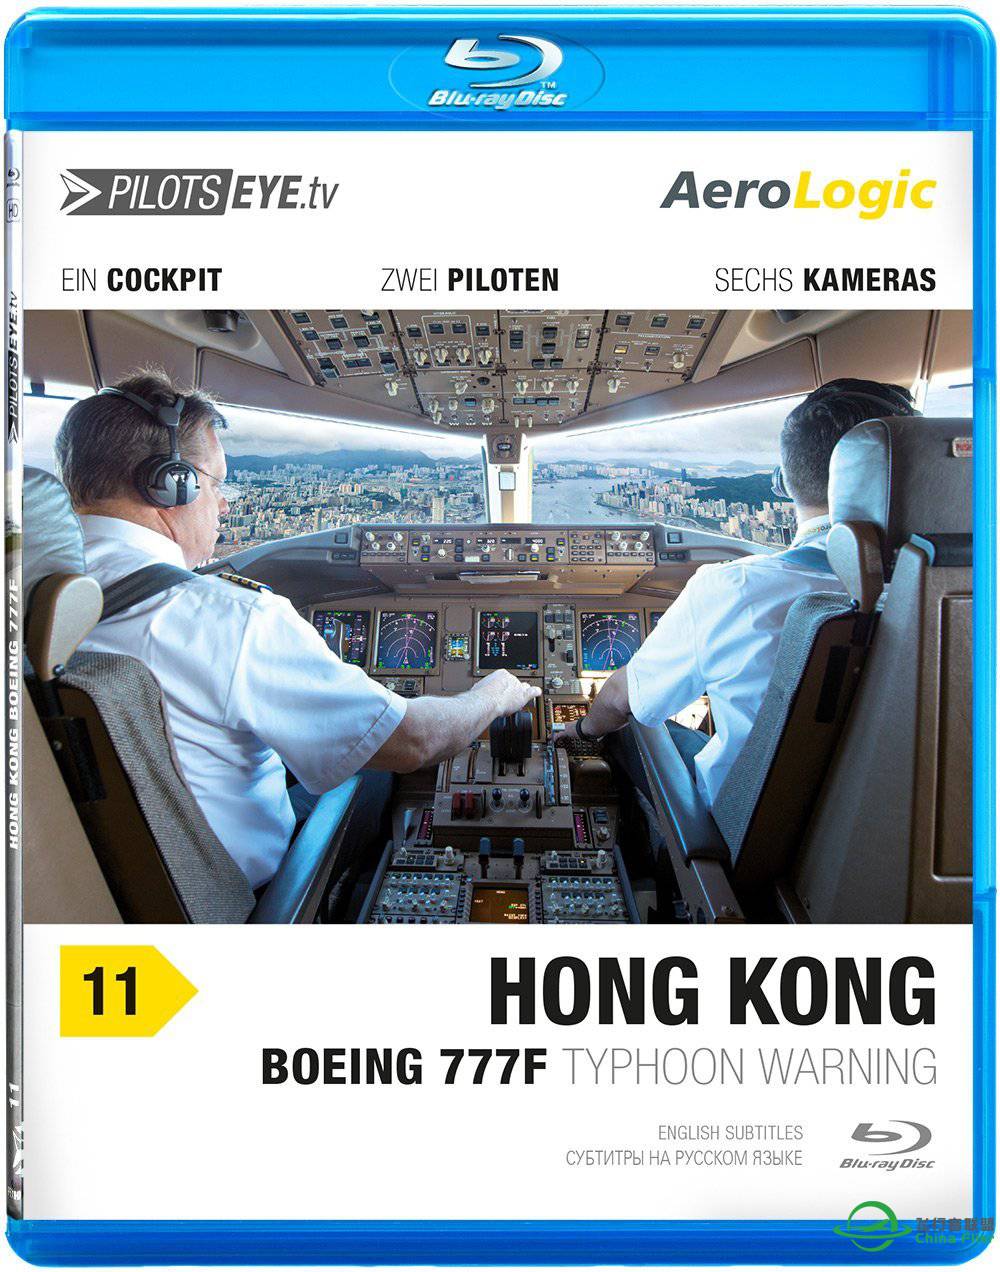 PilotsEye（飞行员之眼）系列视频 ---- 莱比锡-香港-9211 